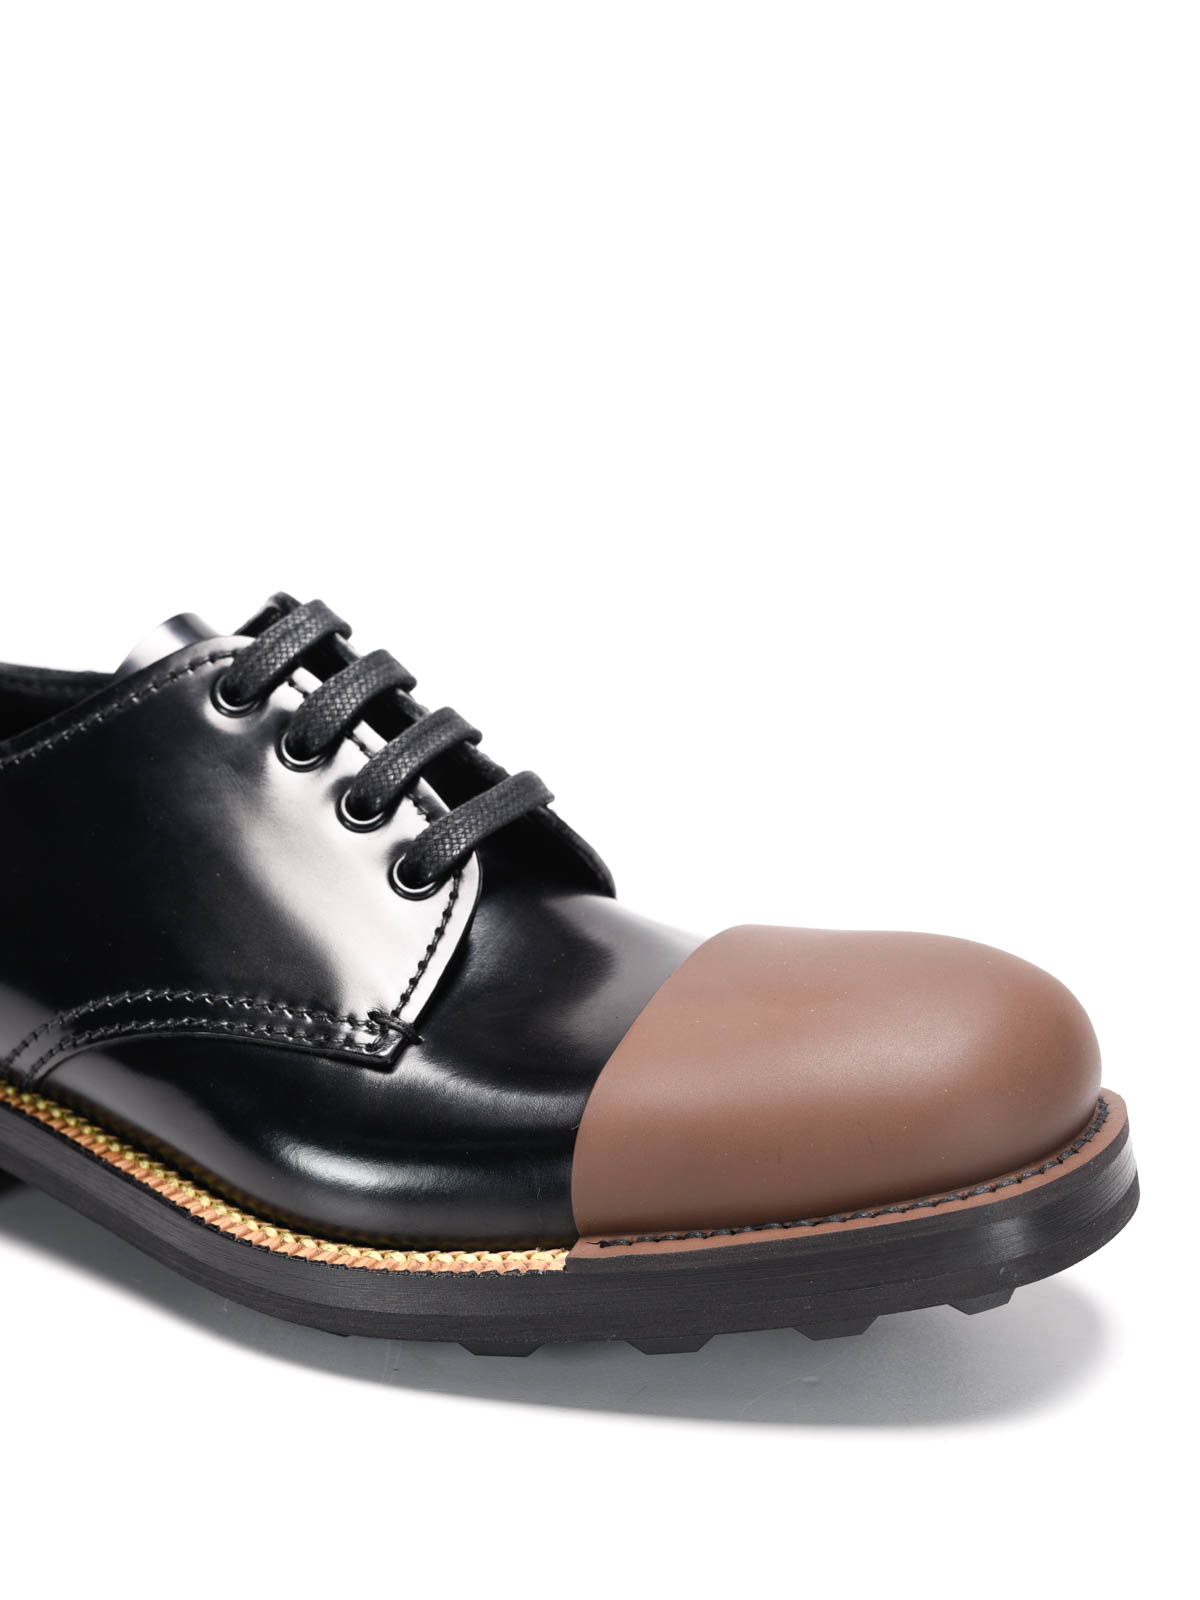 prada rubber shoes